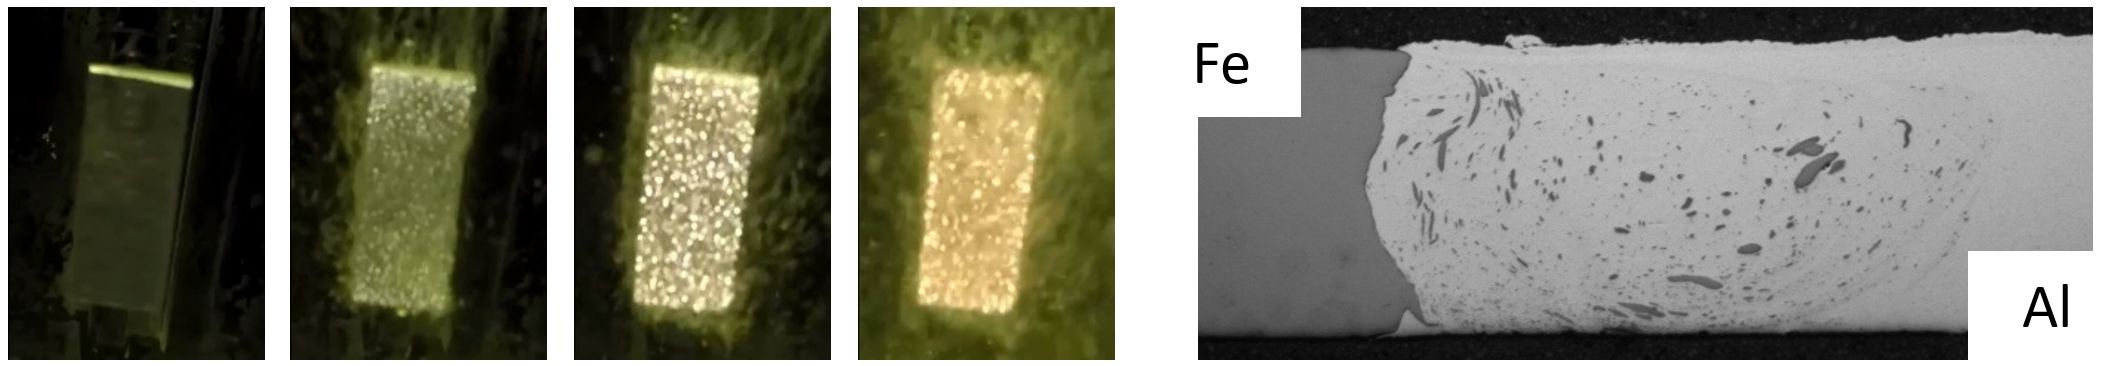 Abbildung 1: Fotostrecke eines PEO-Prozesses (links), lichtmikroskopische Aufnahme eines FSW-Werkstoffverbundes (rechts) 